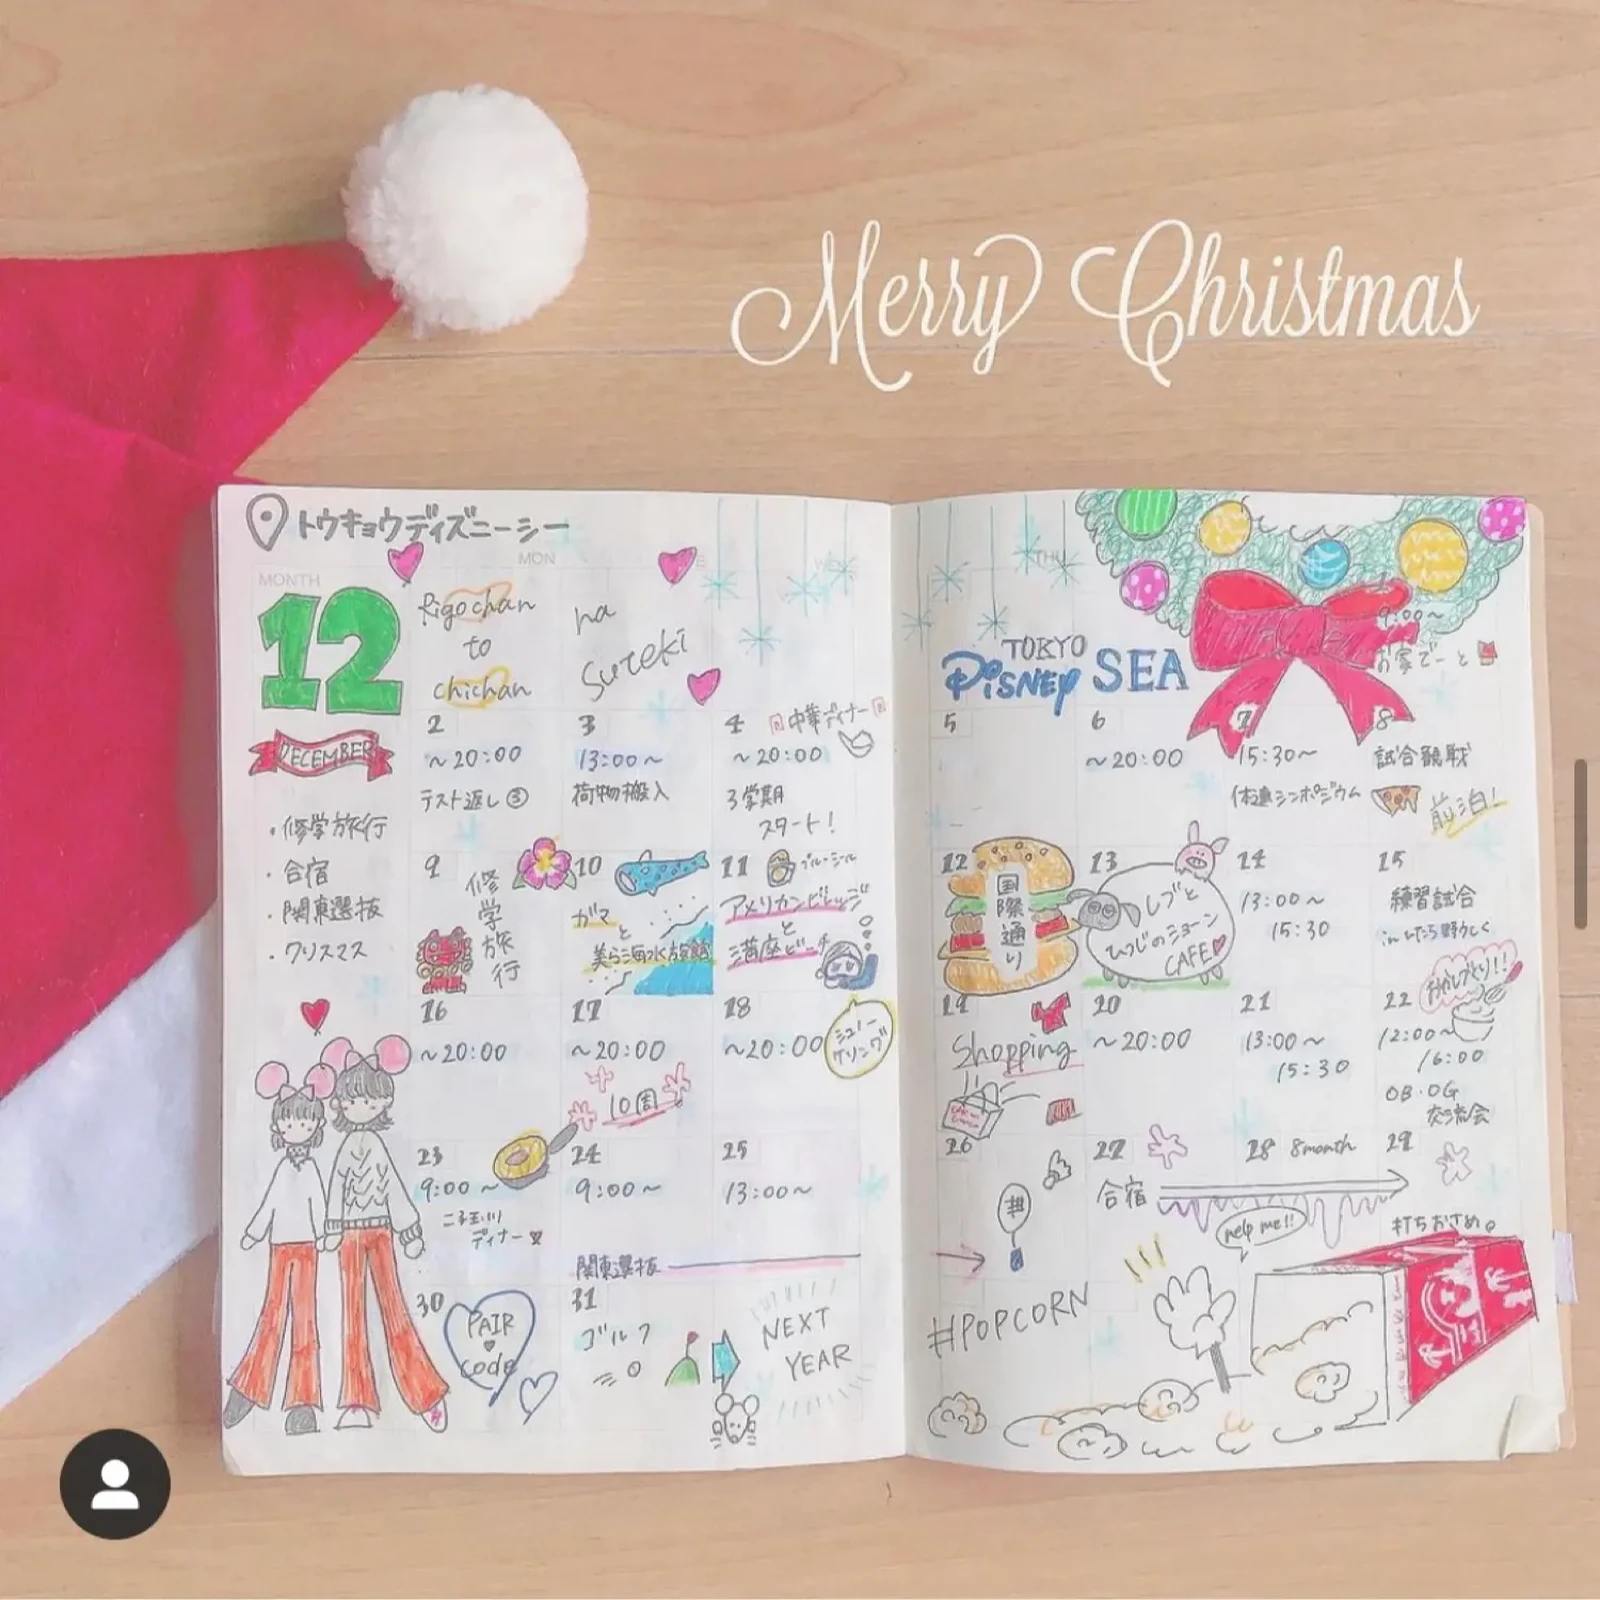 12月のスケジュール帳 クリスマスディズニー 野村理紗が投稿したフォトブック Lemon8